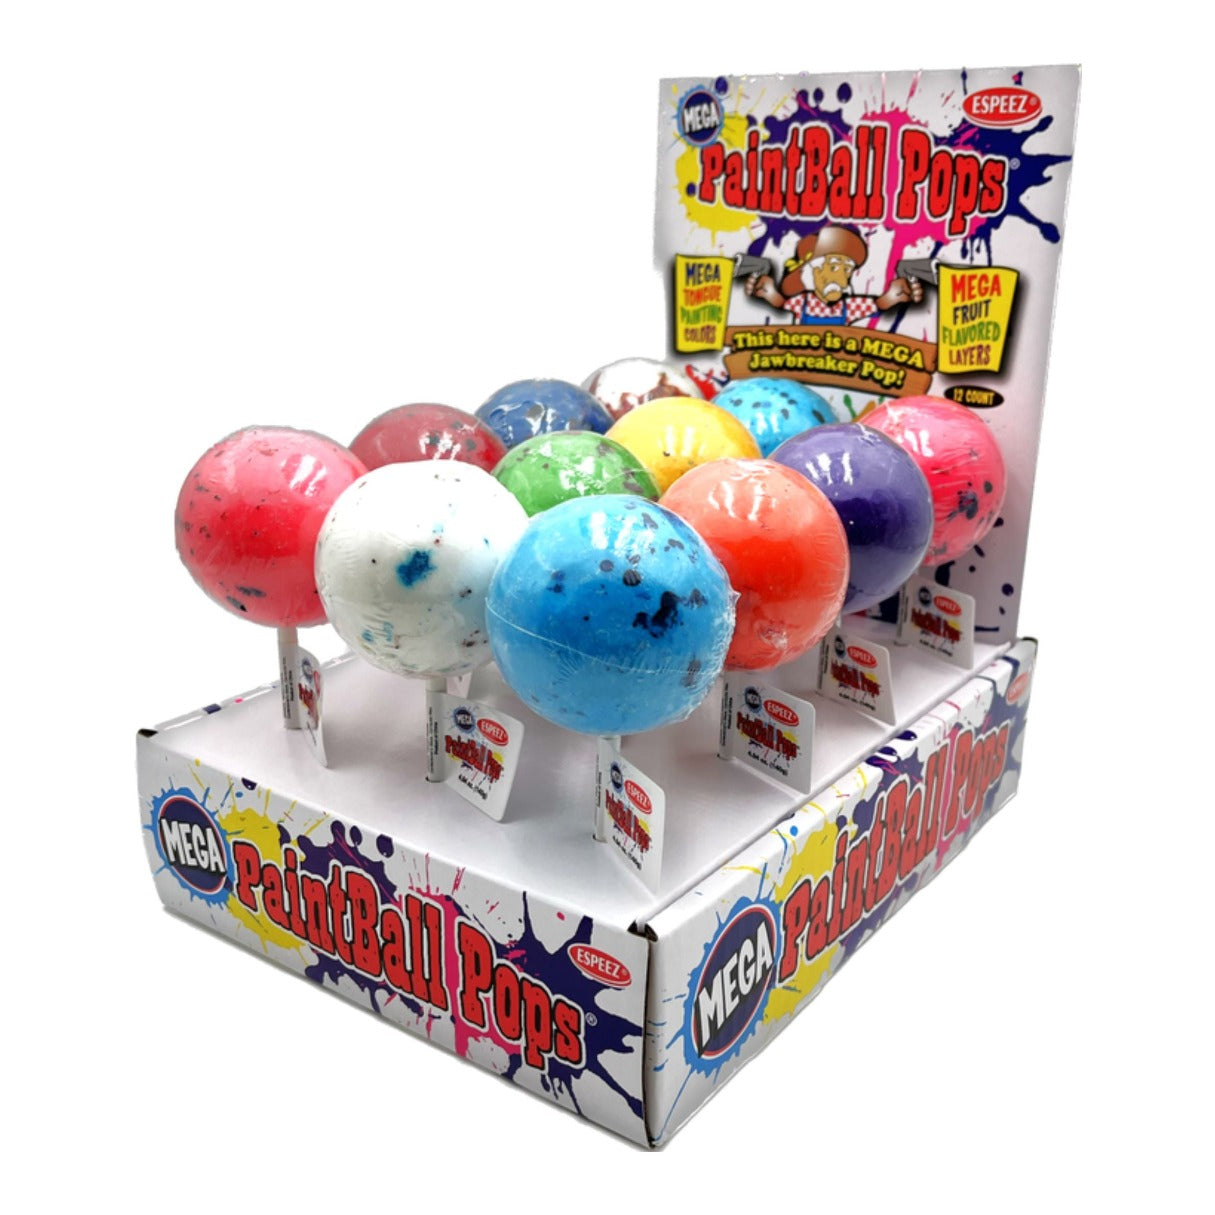 Espeez Mega Paintball Pops 4.8oz - 96ct